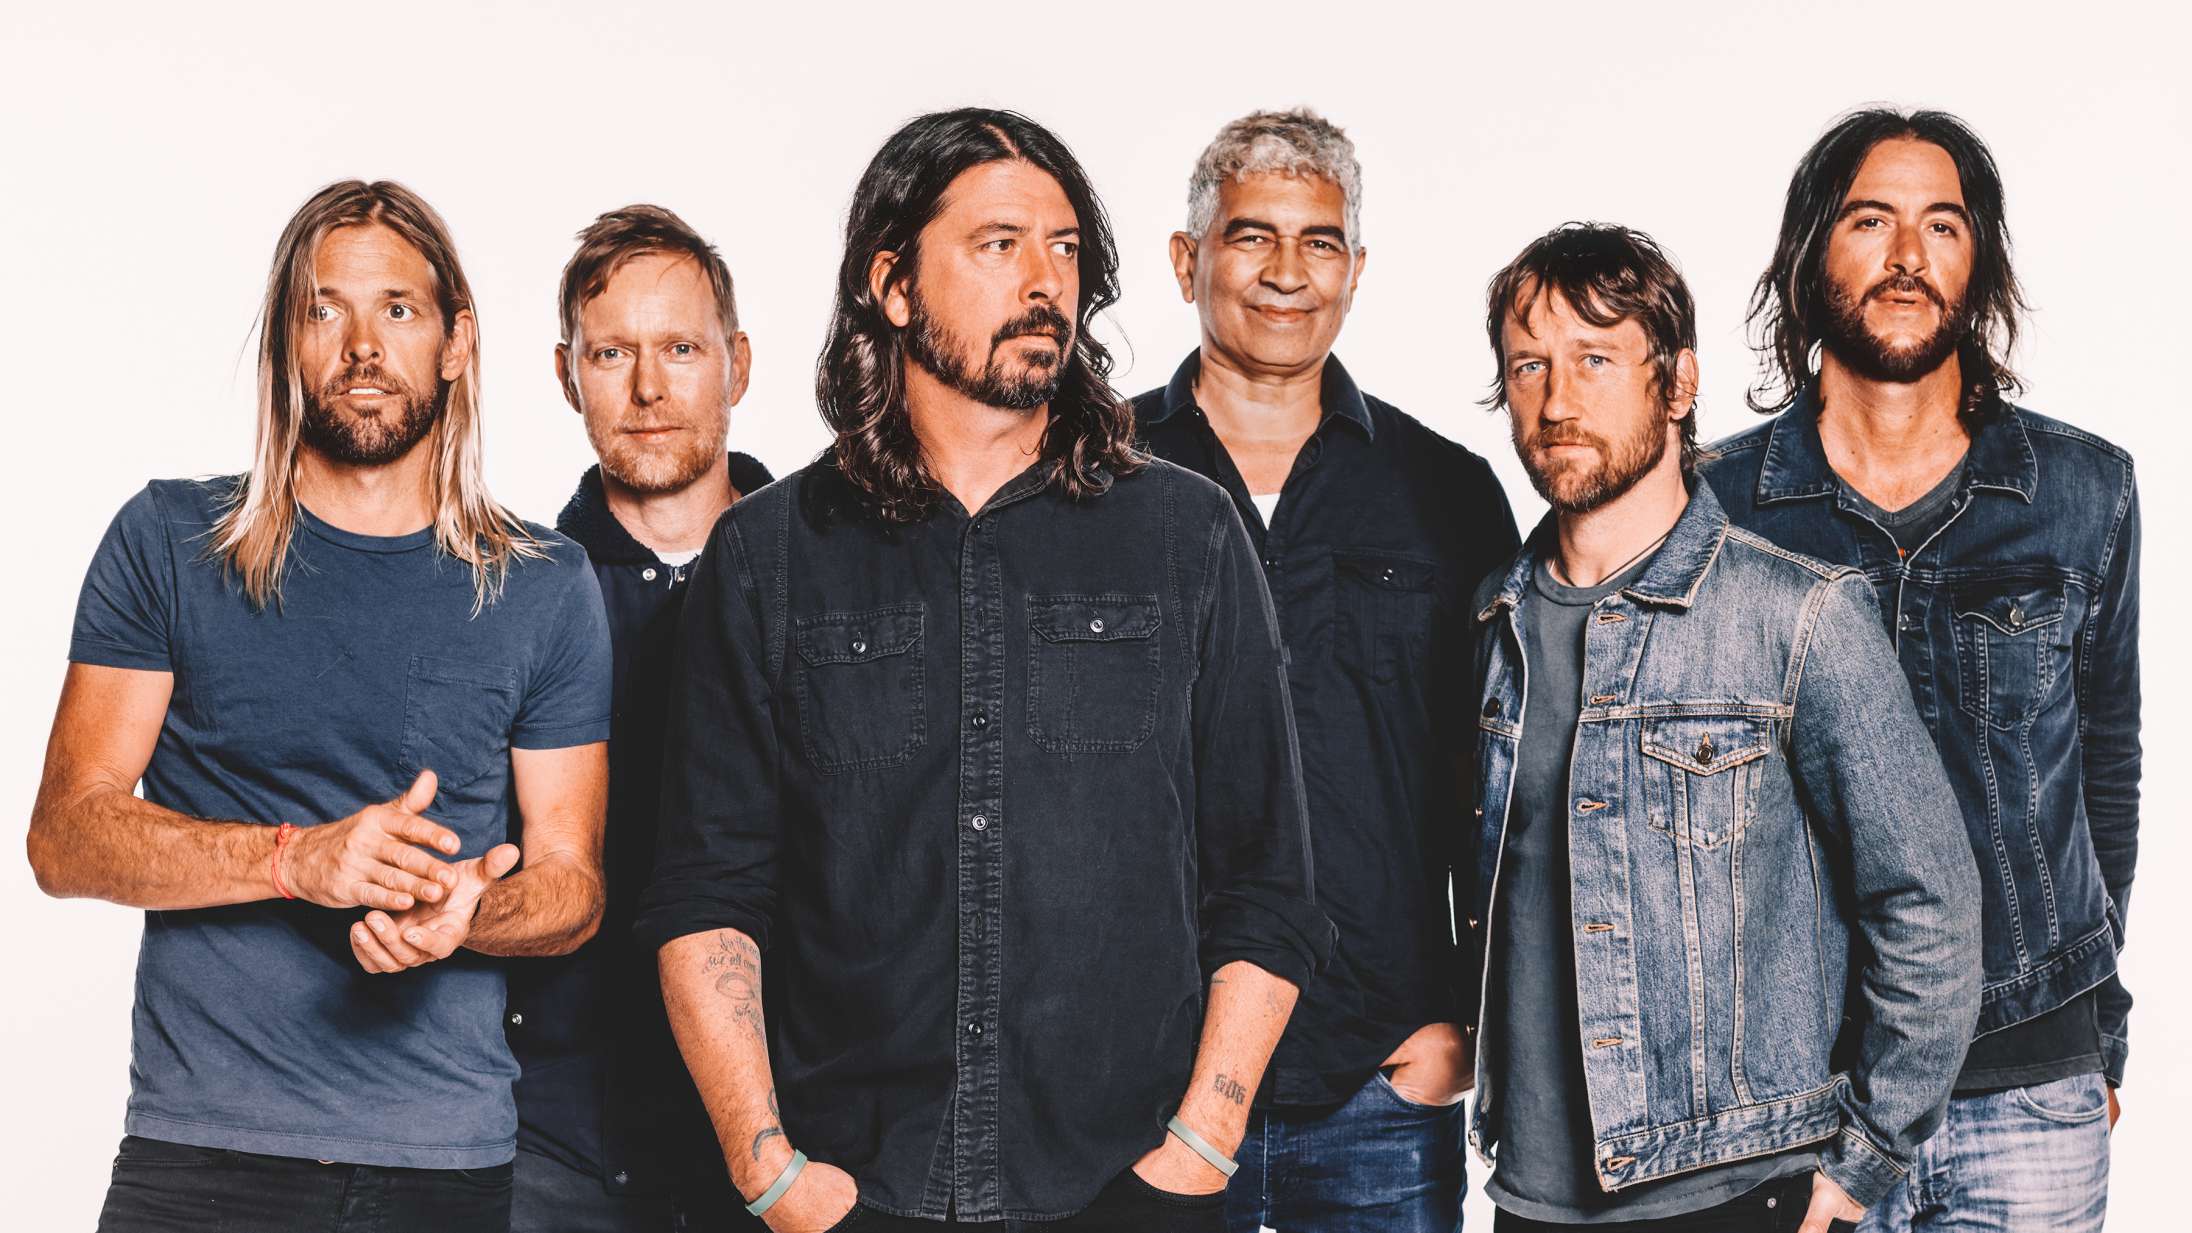 Foo Fighters’ ‘Medicine at Midnight’ er lyden af rockmusik på sygelejet